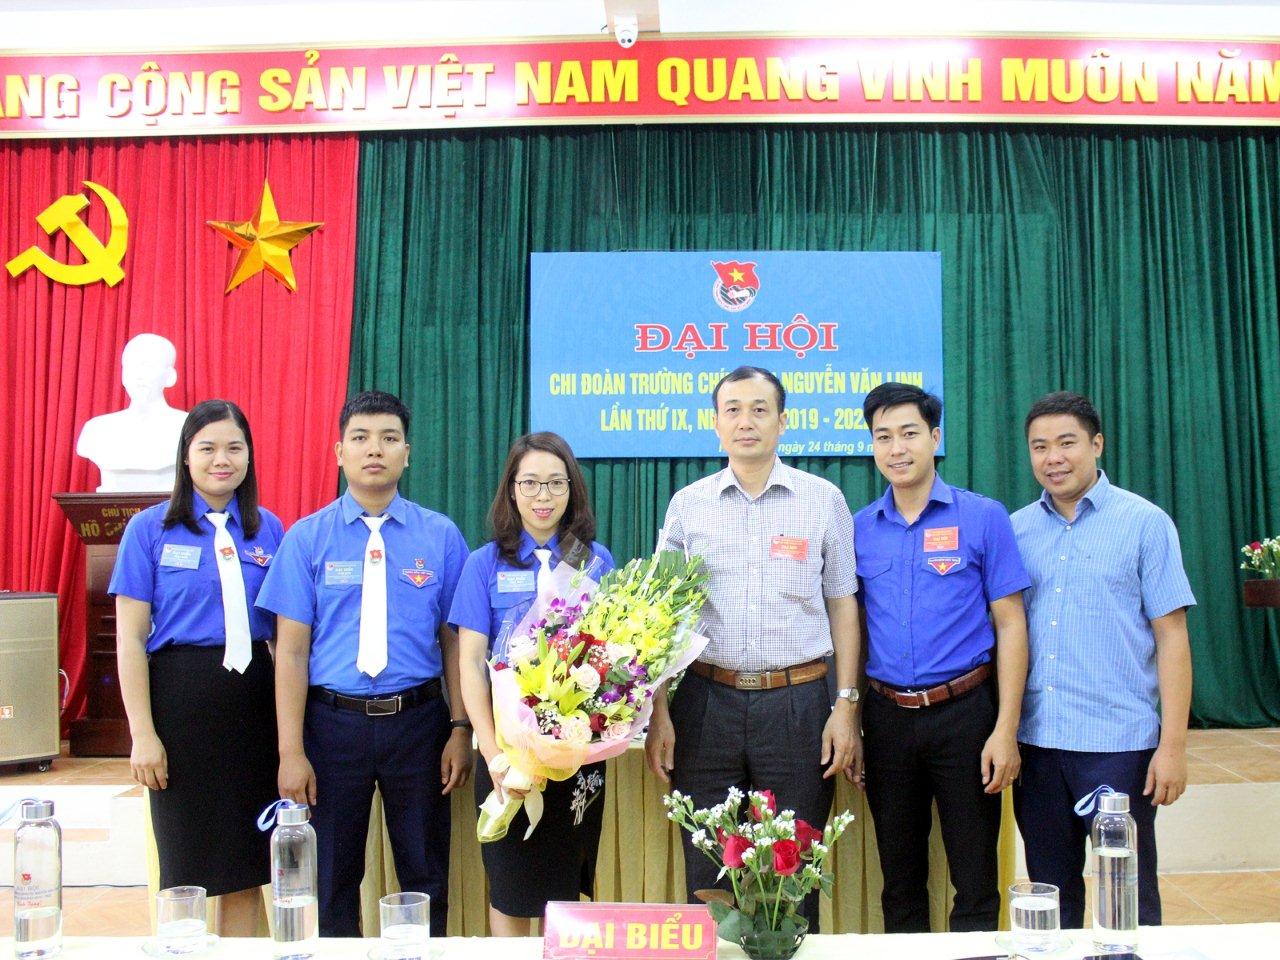 Đại hội Chi đoàn trường Chính trị Nguyễn Văn Linh lần thứ IX, nhiệm kỳ 2019 - 2022